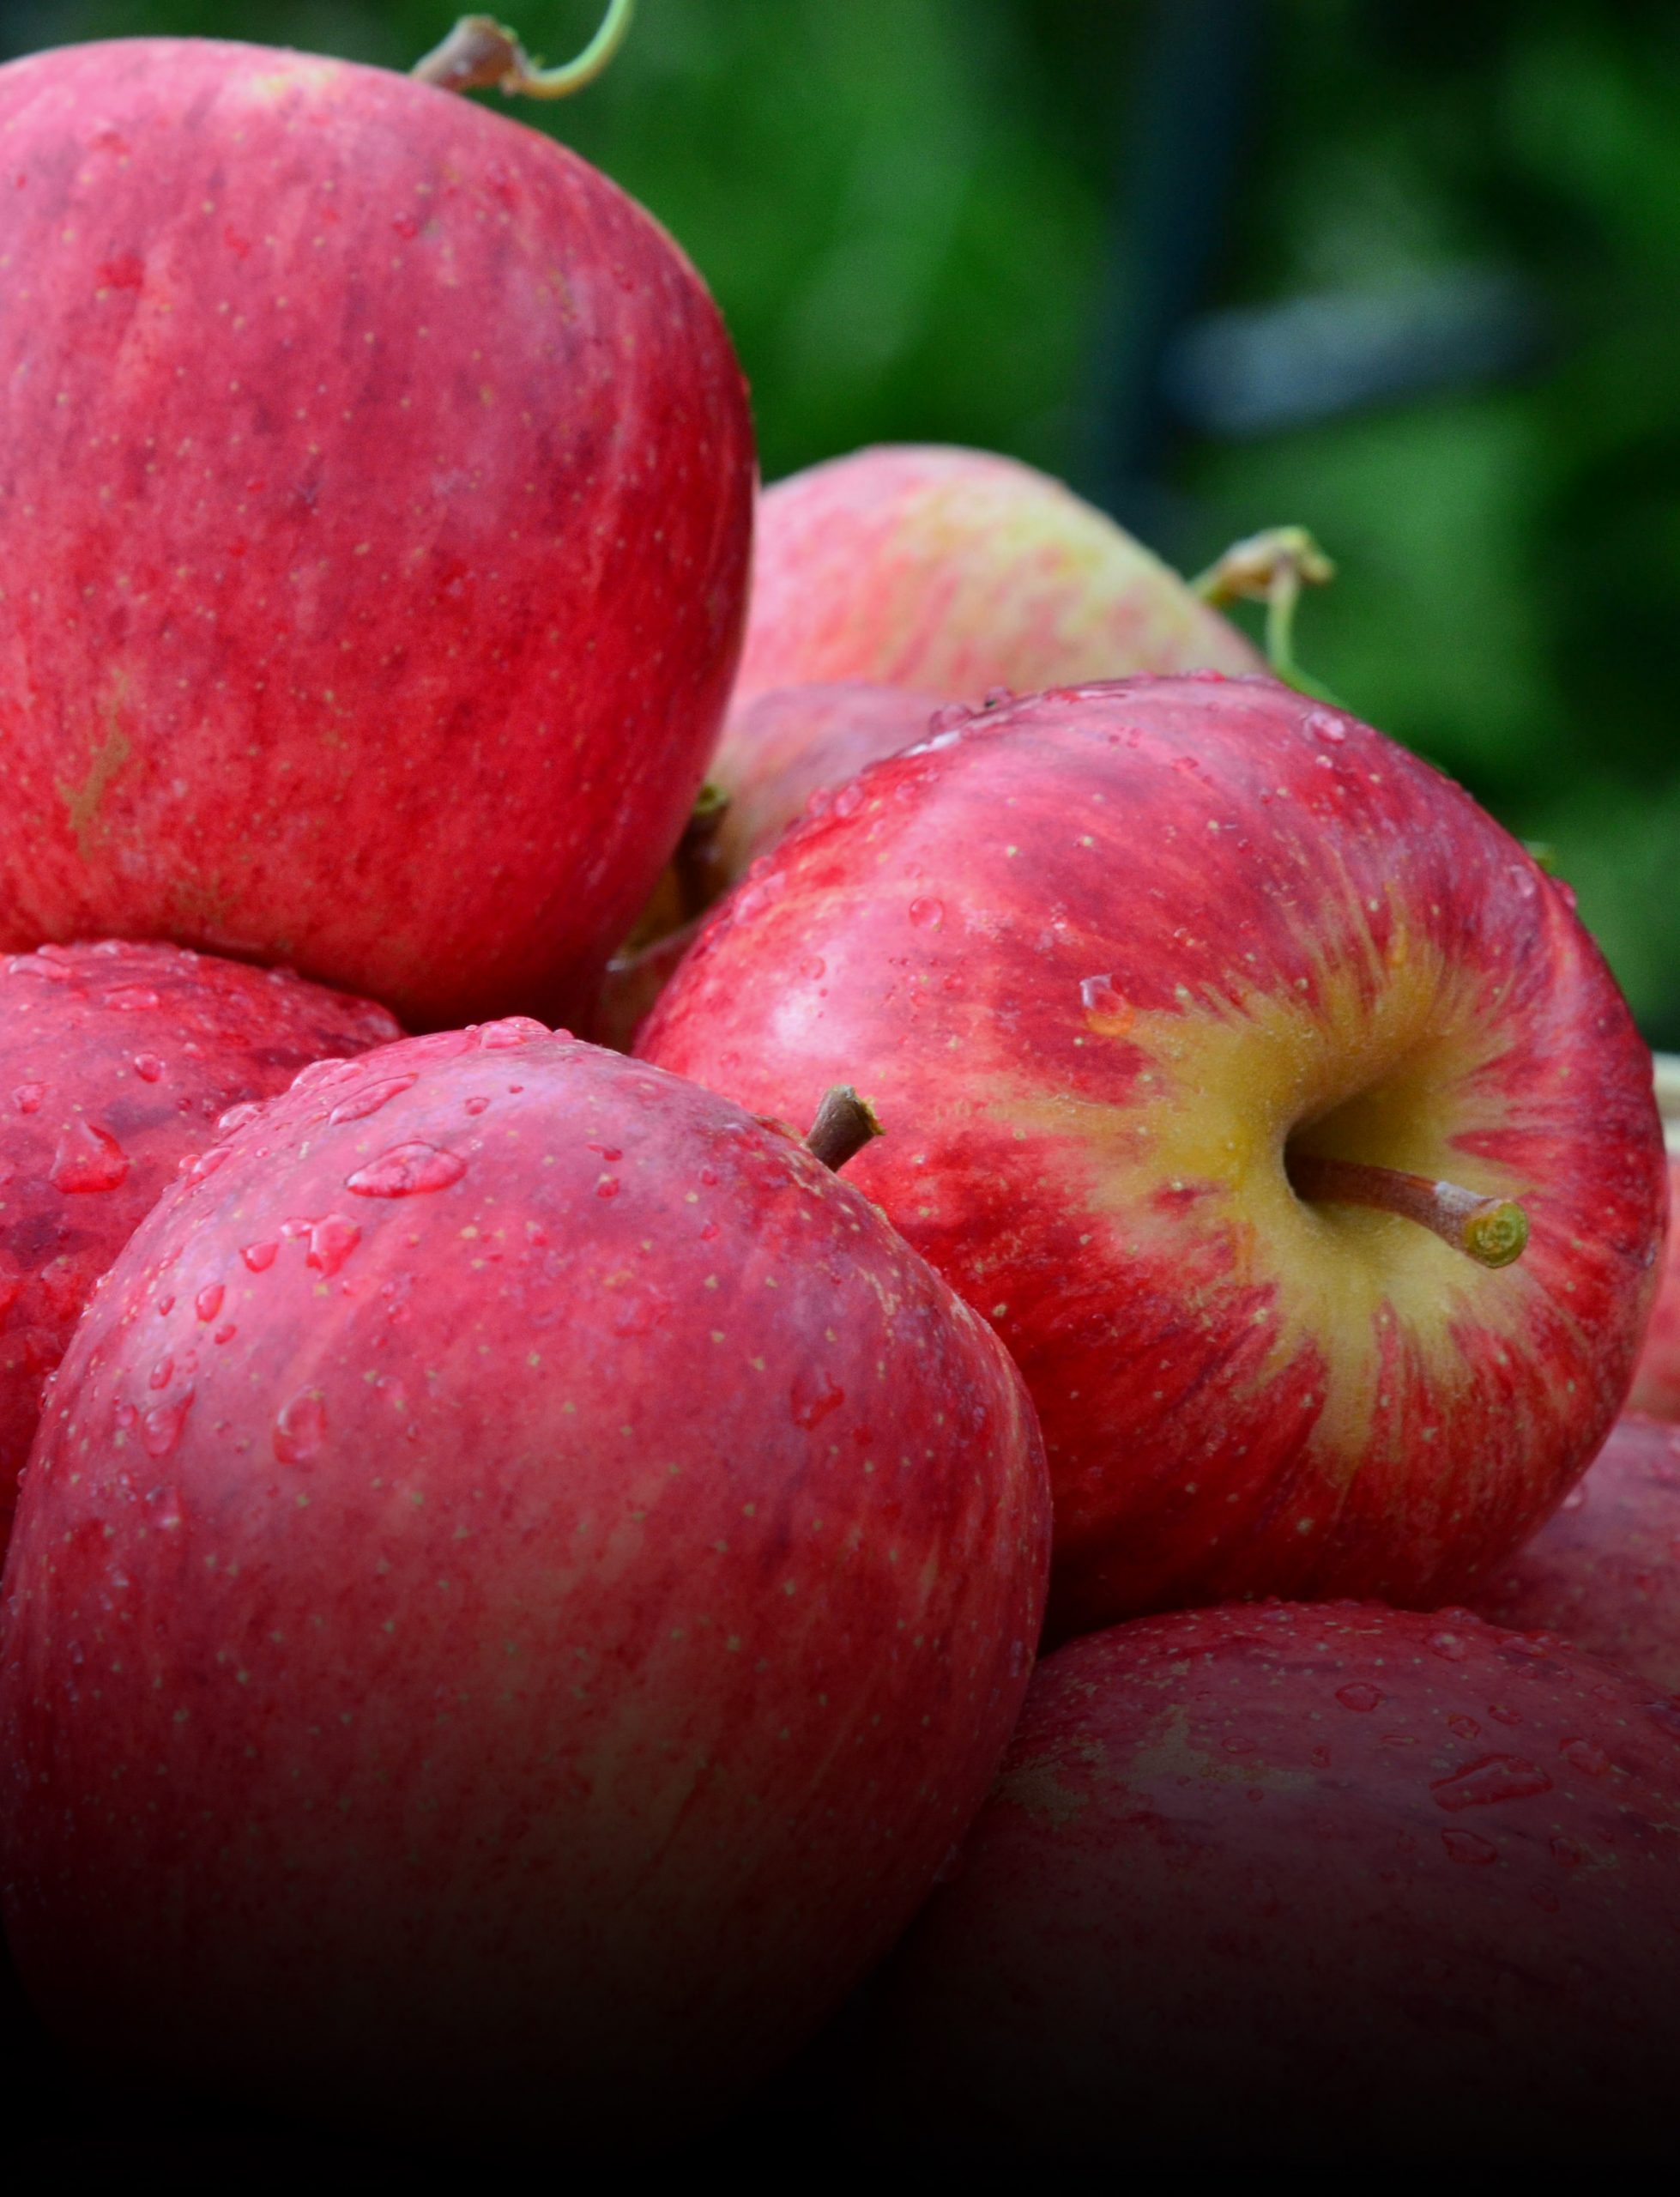 Mercado da maçã deve ter redução das importações com a comercialização da safra nacional